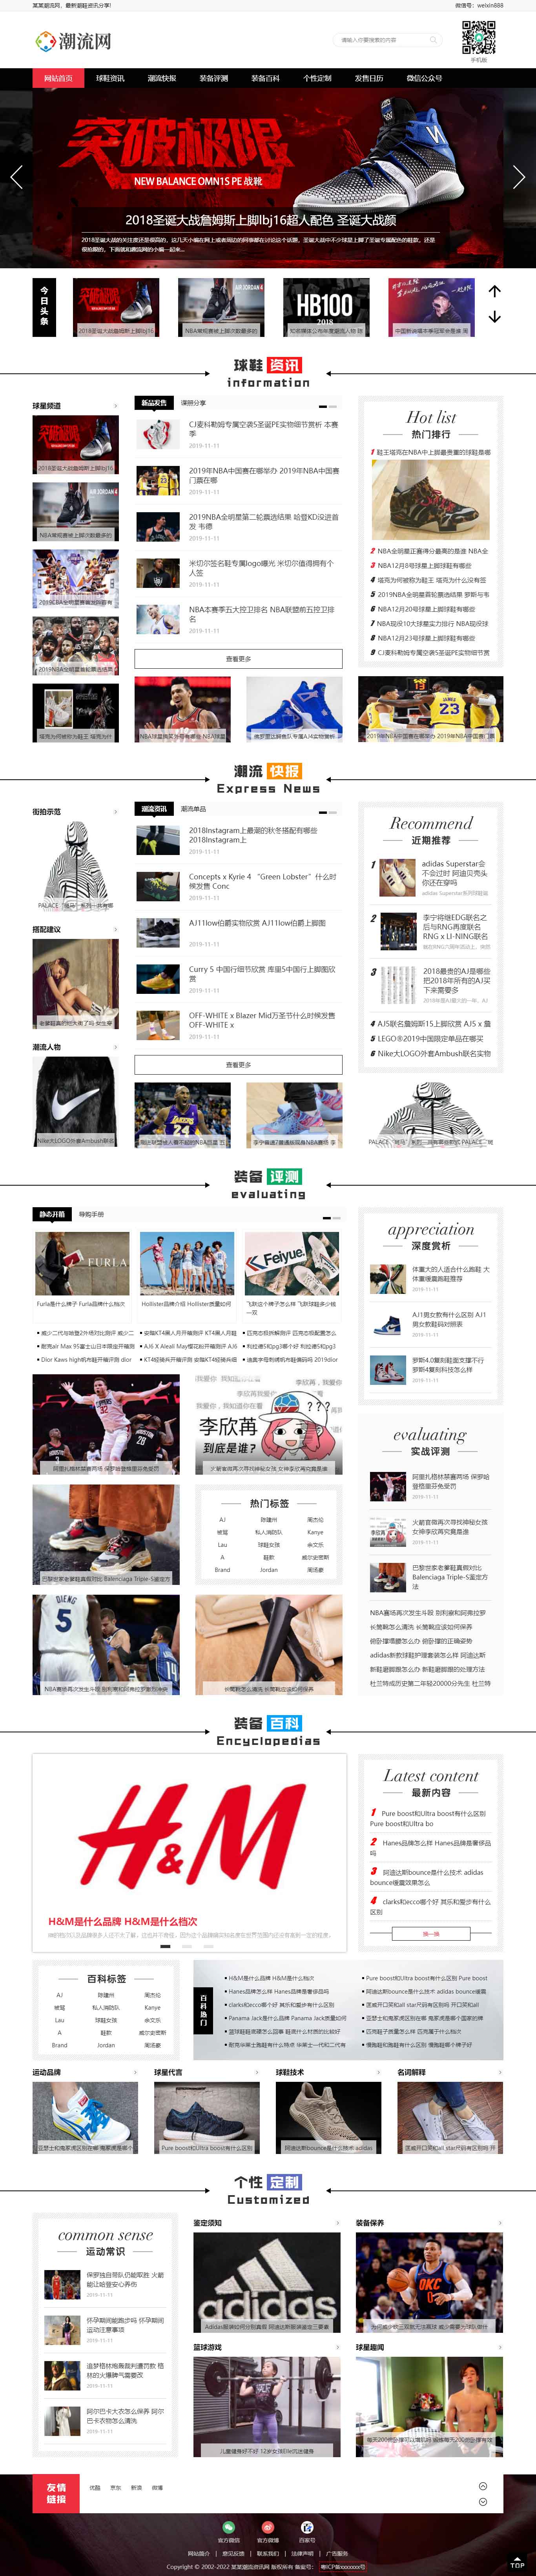 鄭州網站設計潮牌鞋潮流資訊網站建設制作(圖1)